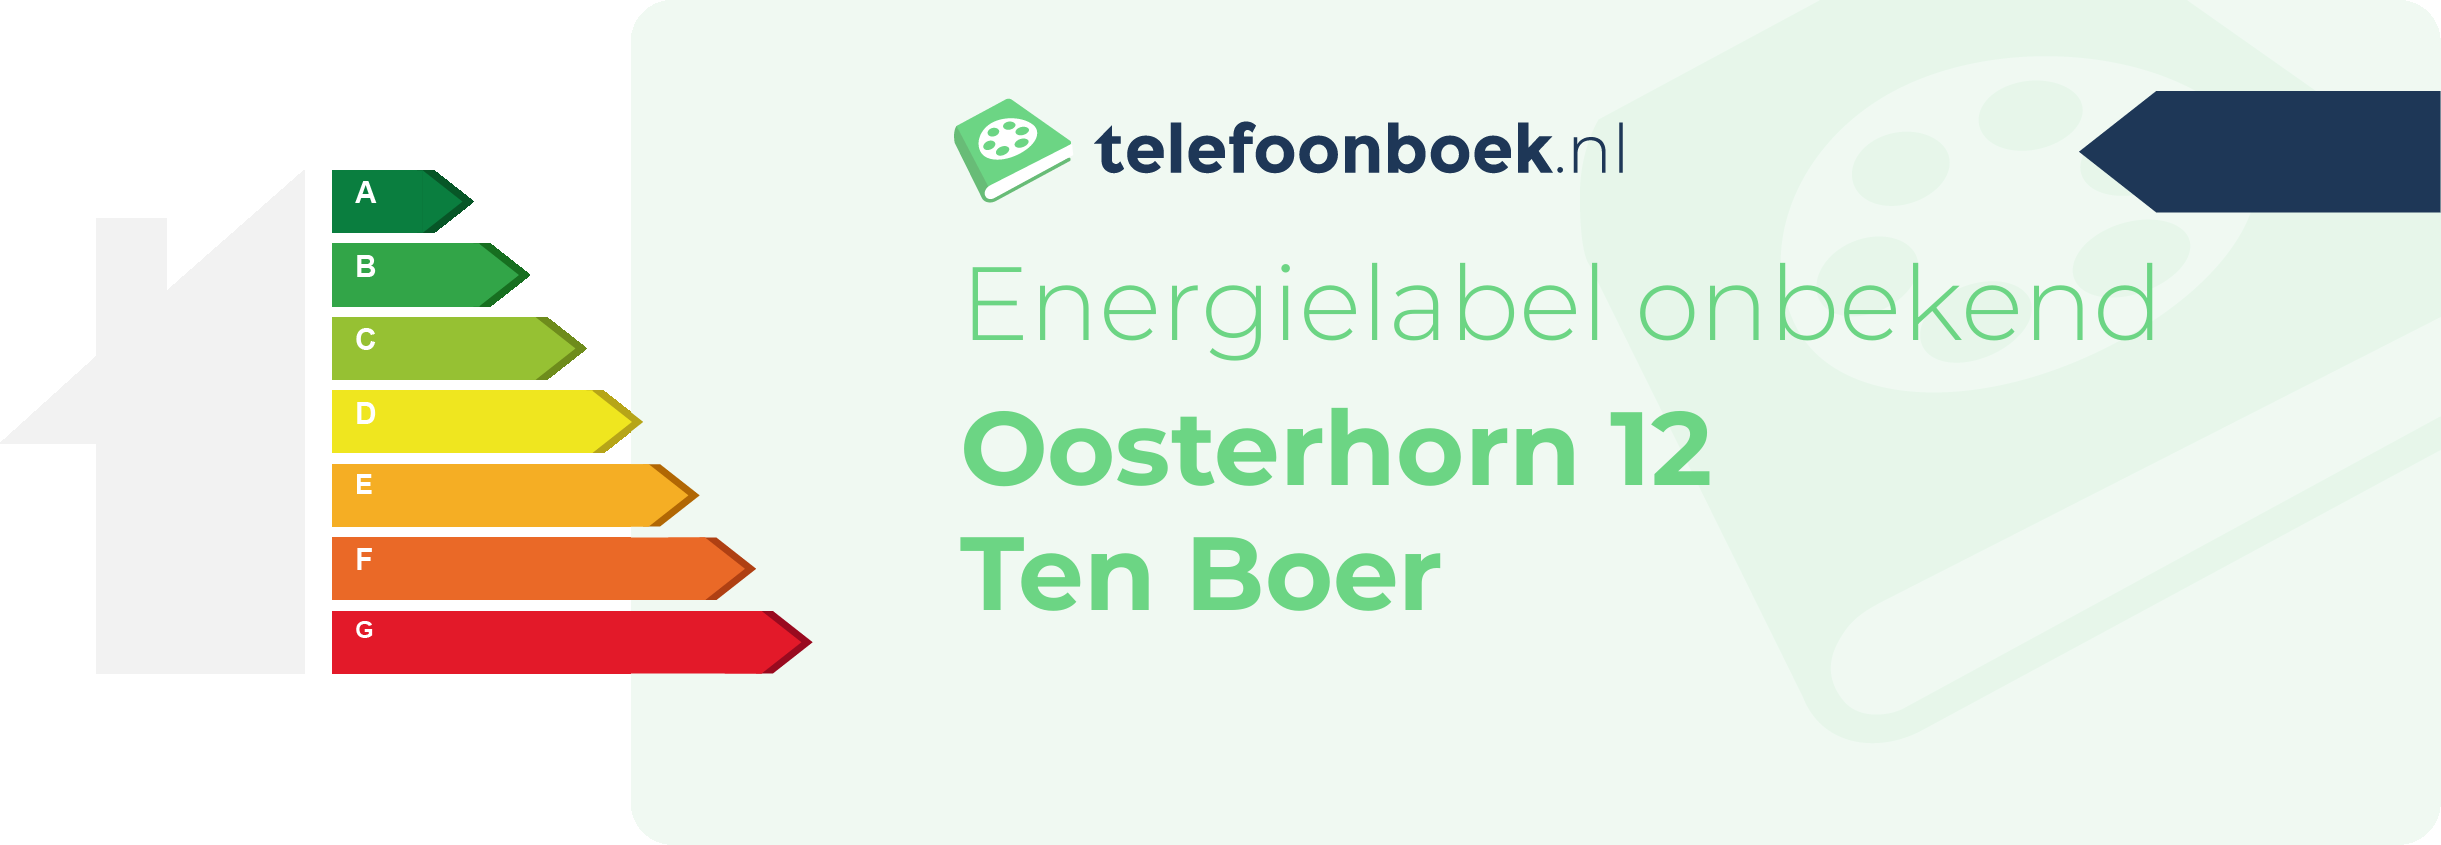 Energielabel Oosterhorn 12 Ten Boer